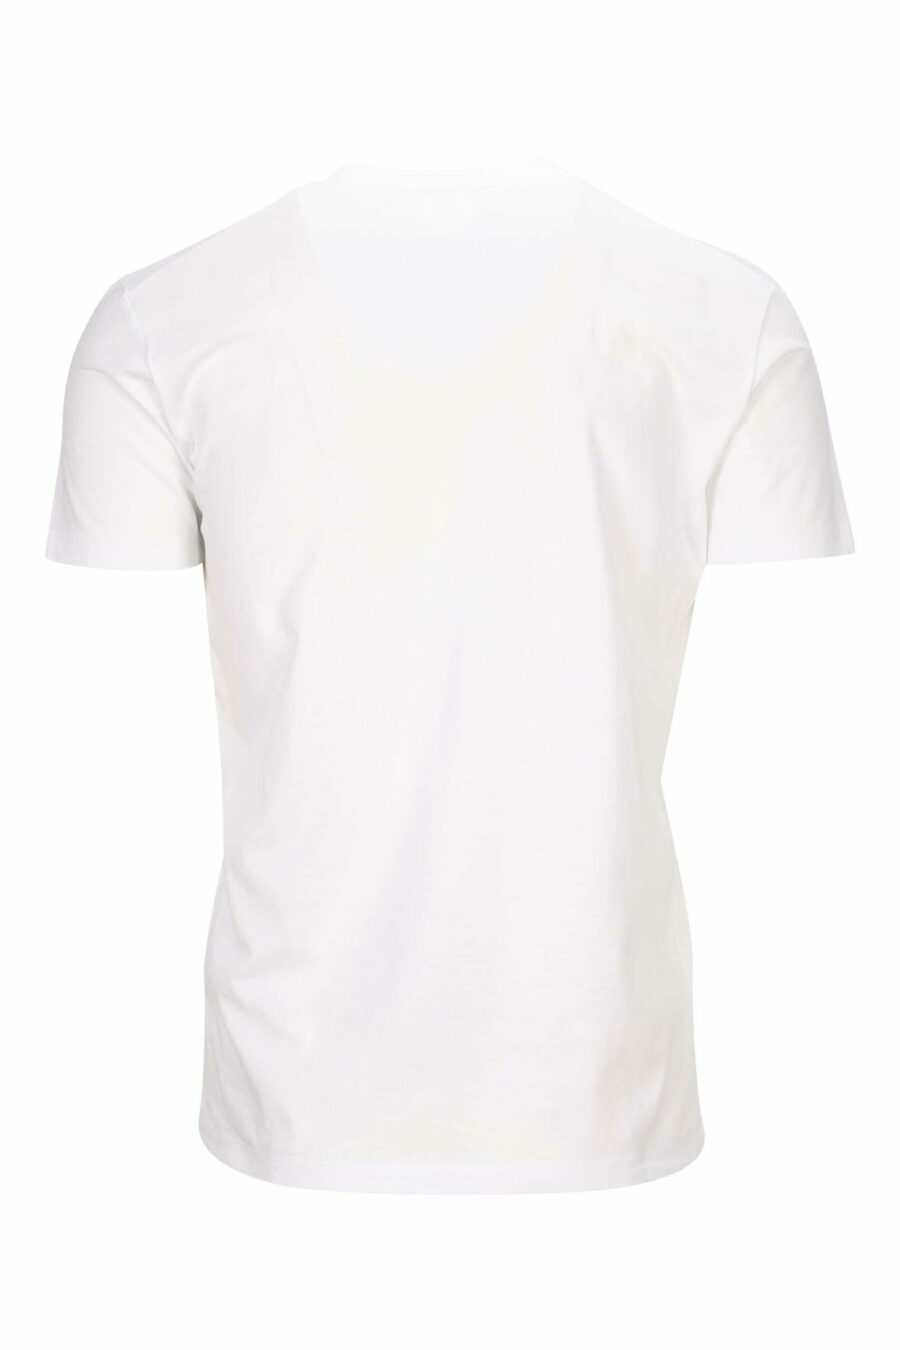 T-shirt branca com rabiscos "ícone" maxilogo - 8054148362829 1 à escala